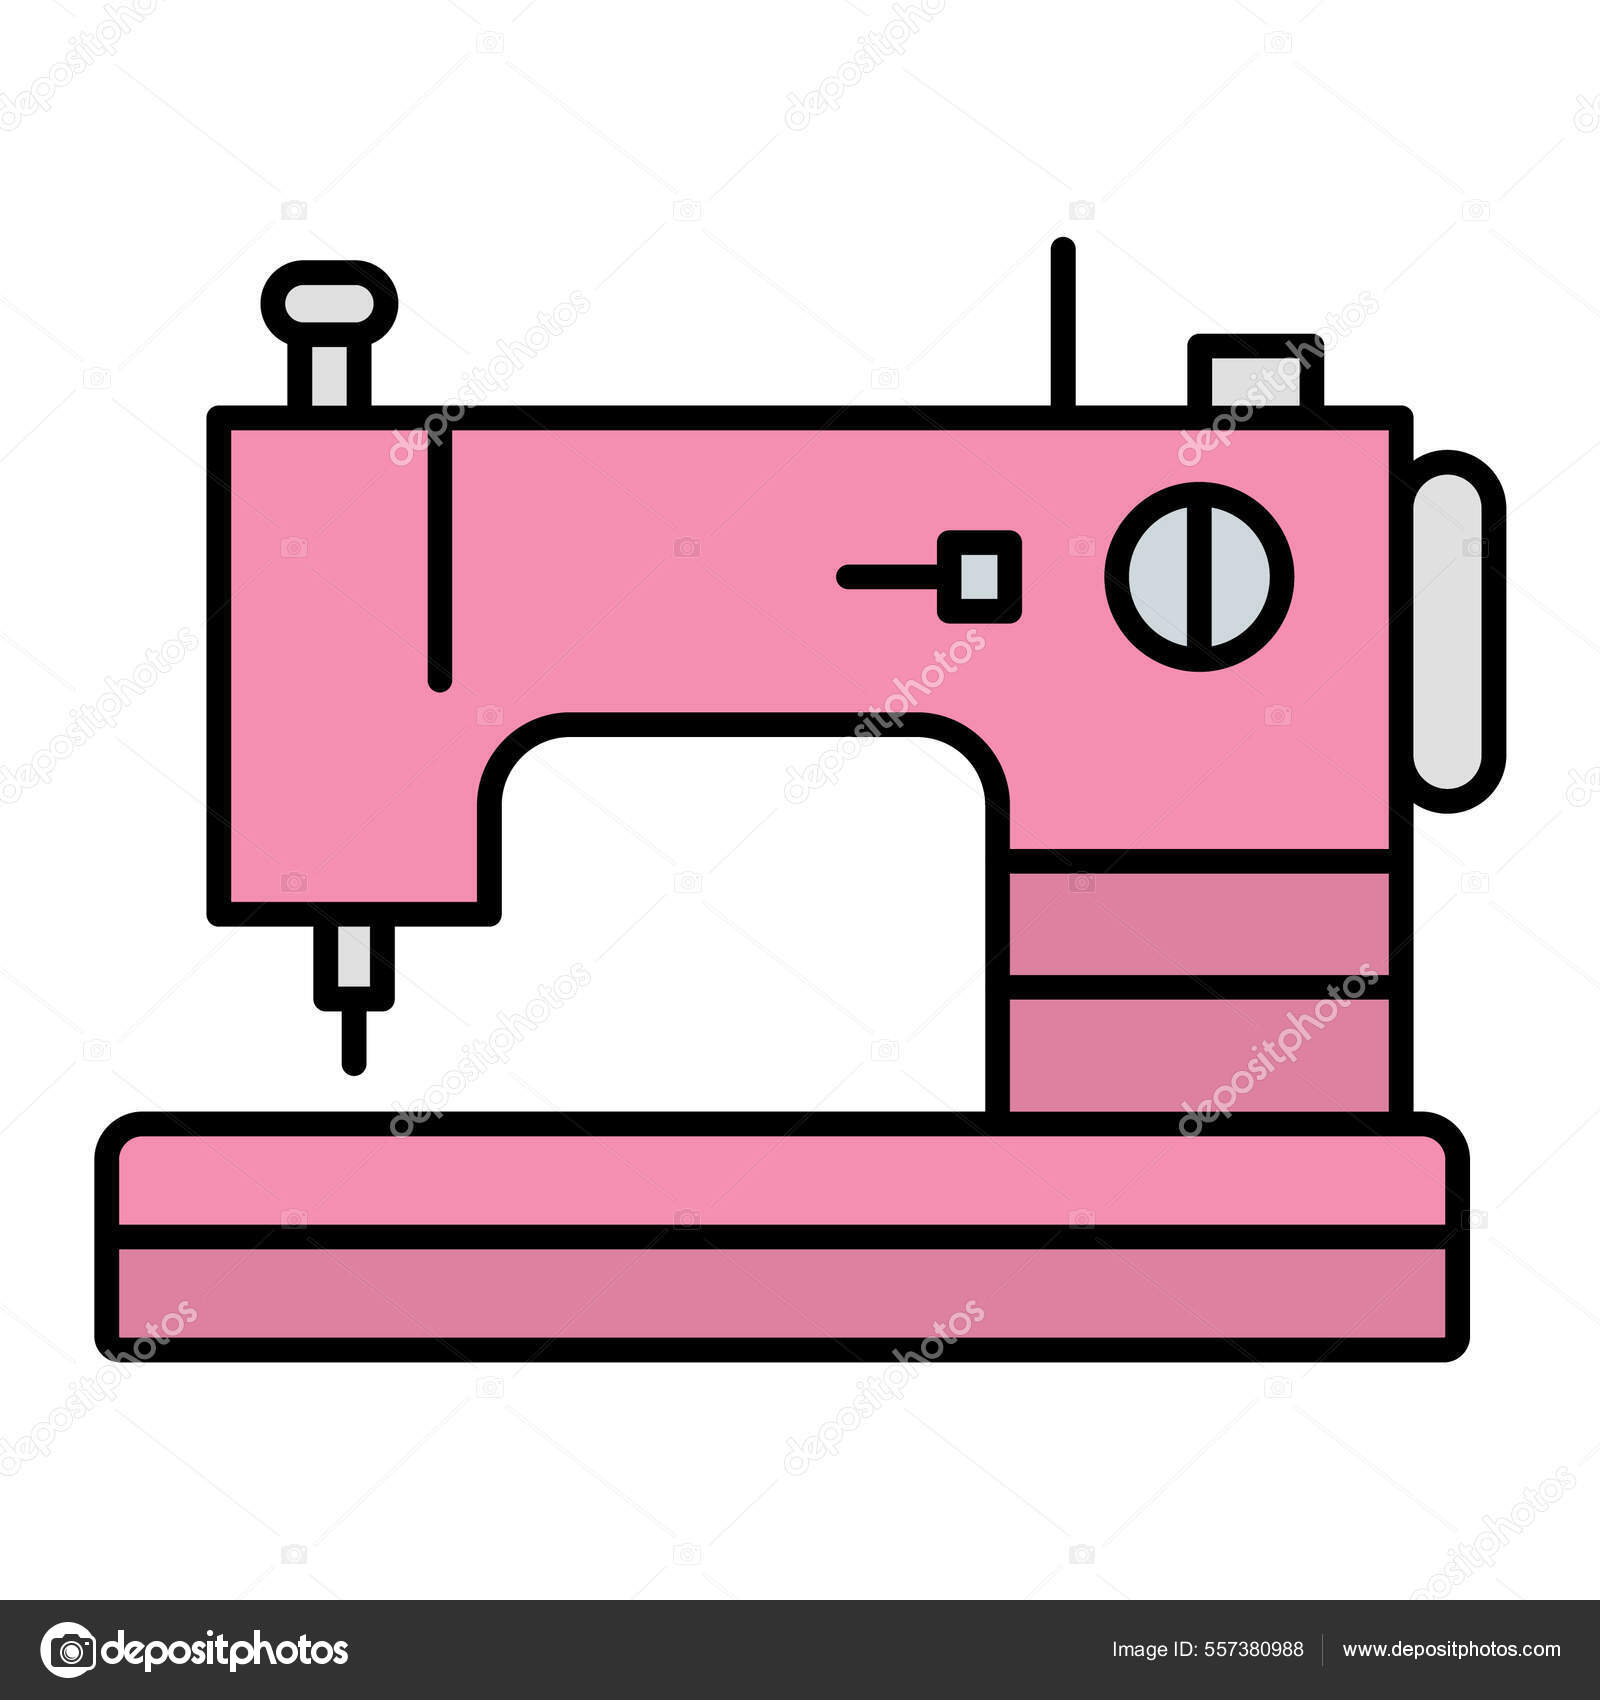 Icono de máquina de coser manual ilustración vectorial simple del icono de  máquina de coser manual